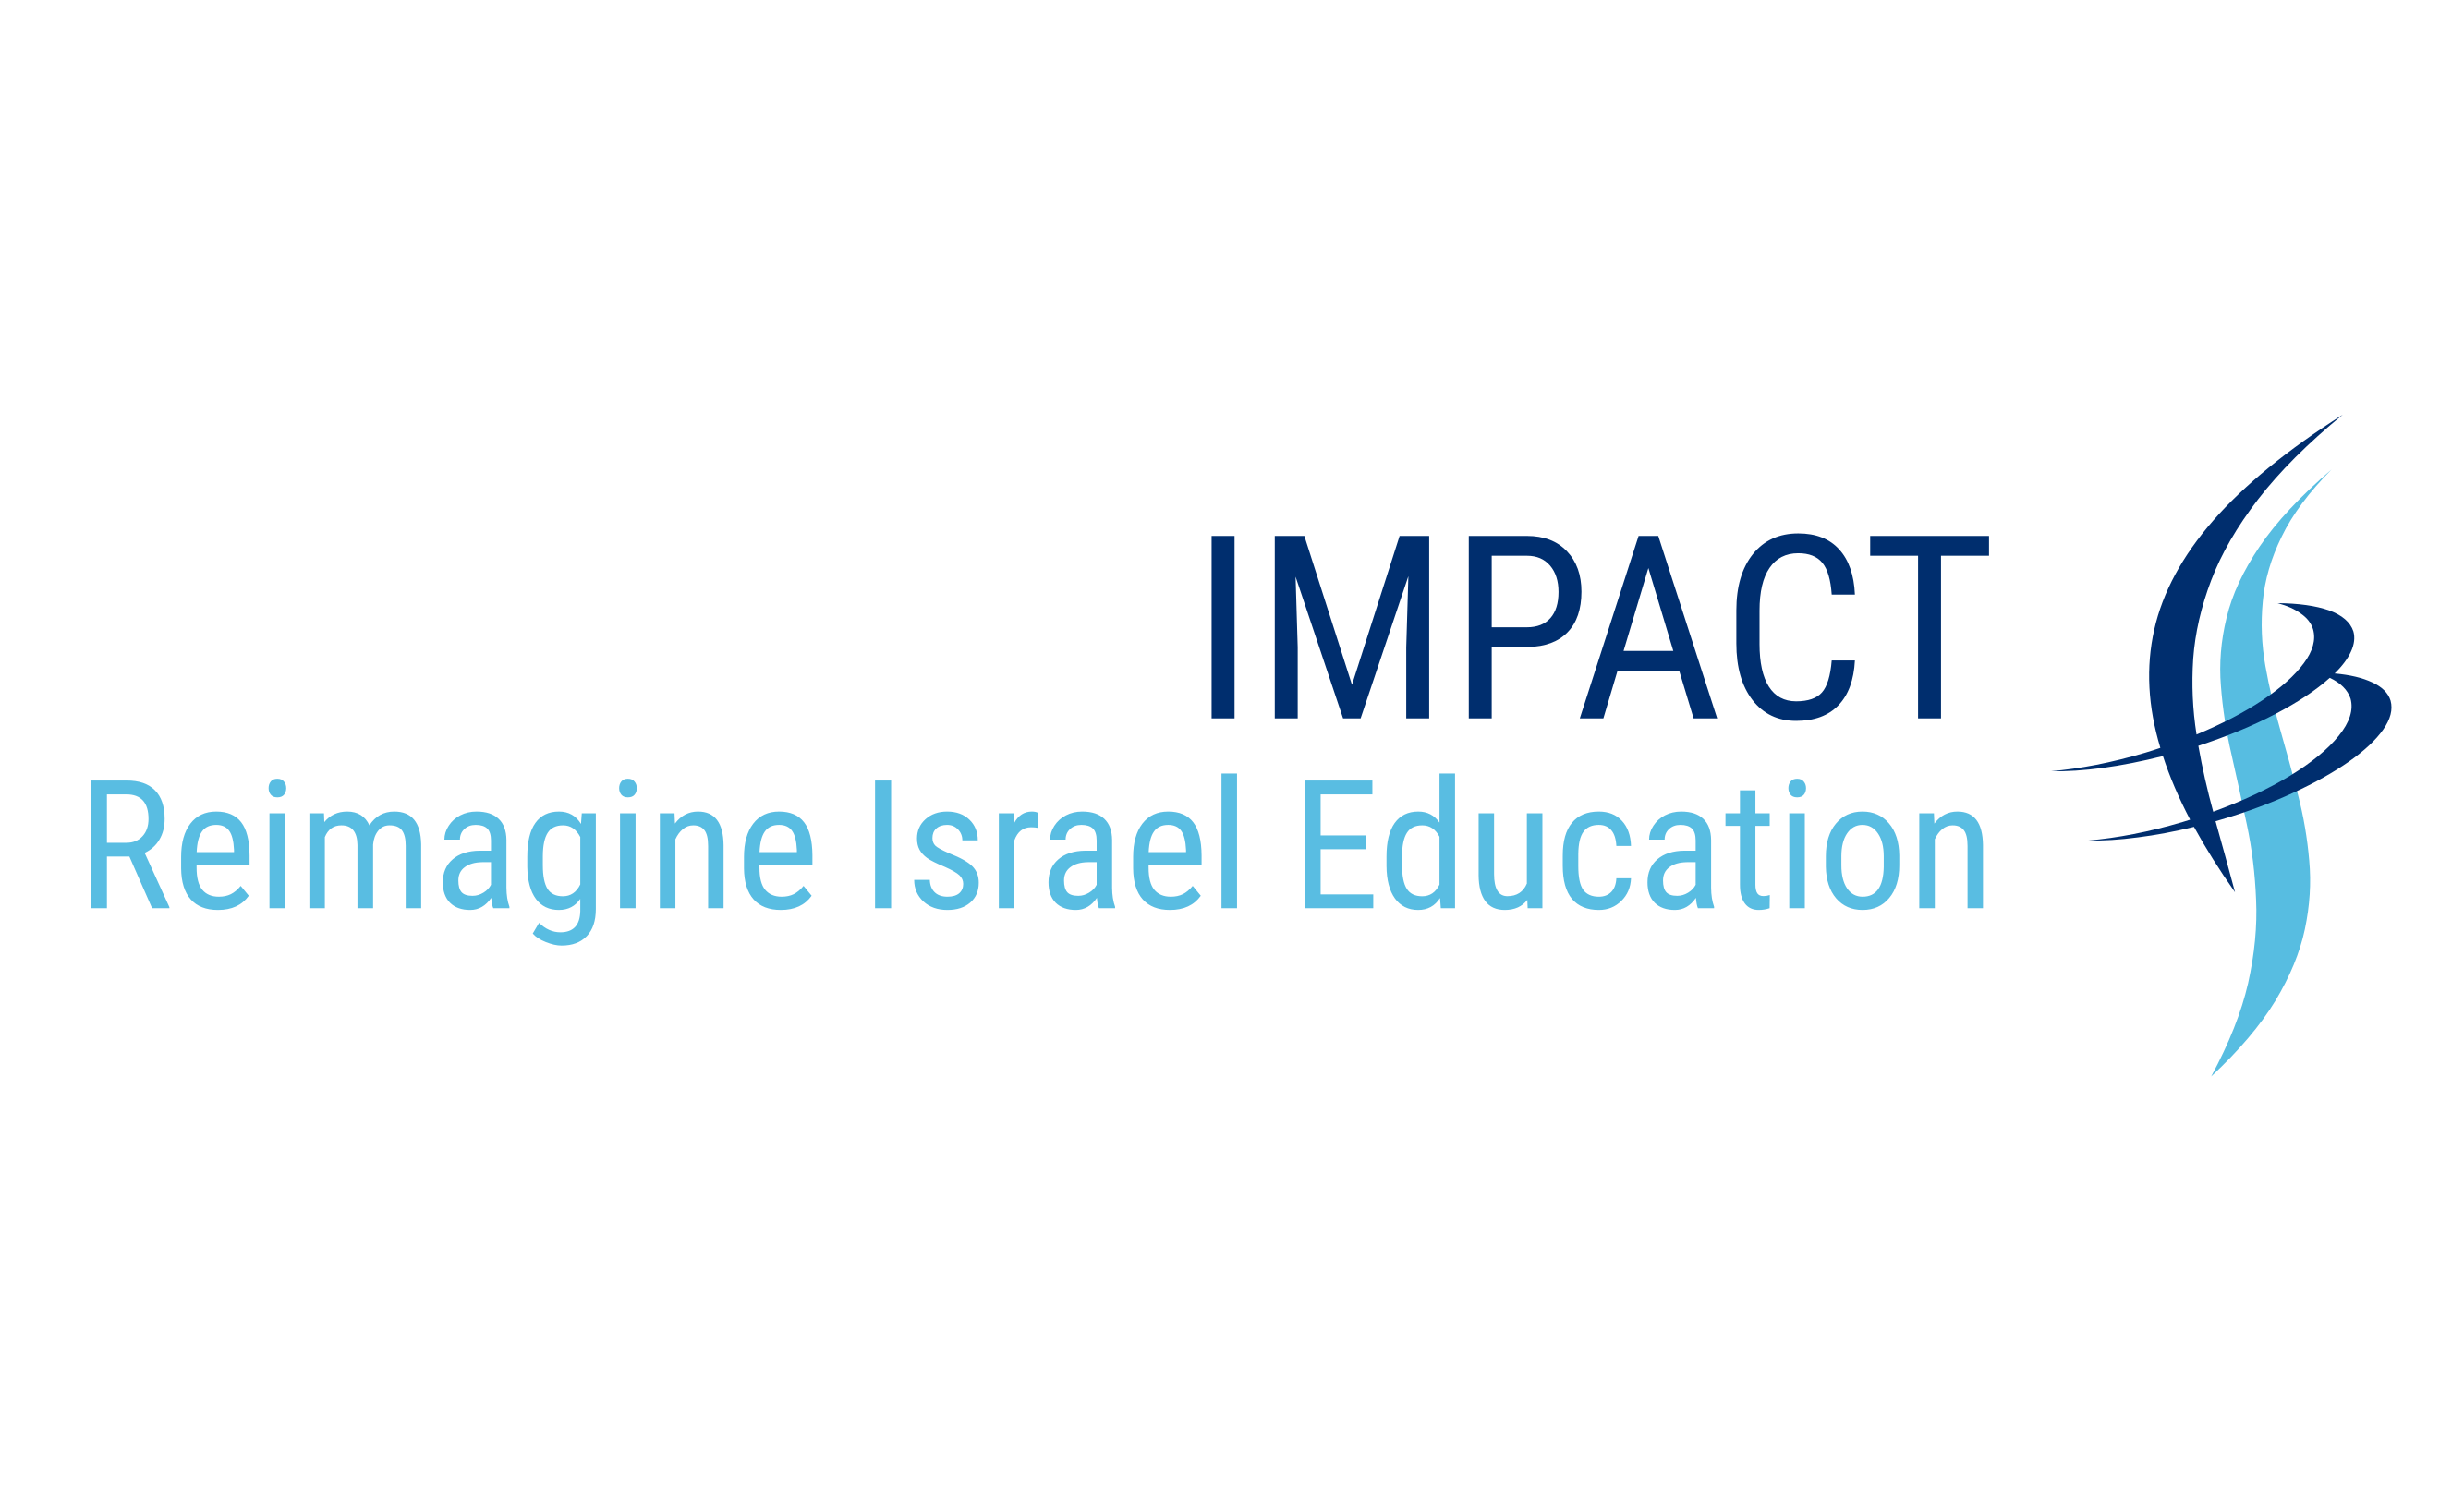 Impact Israel Education